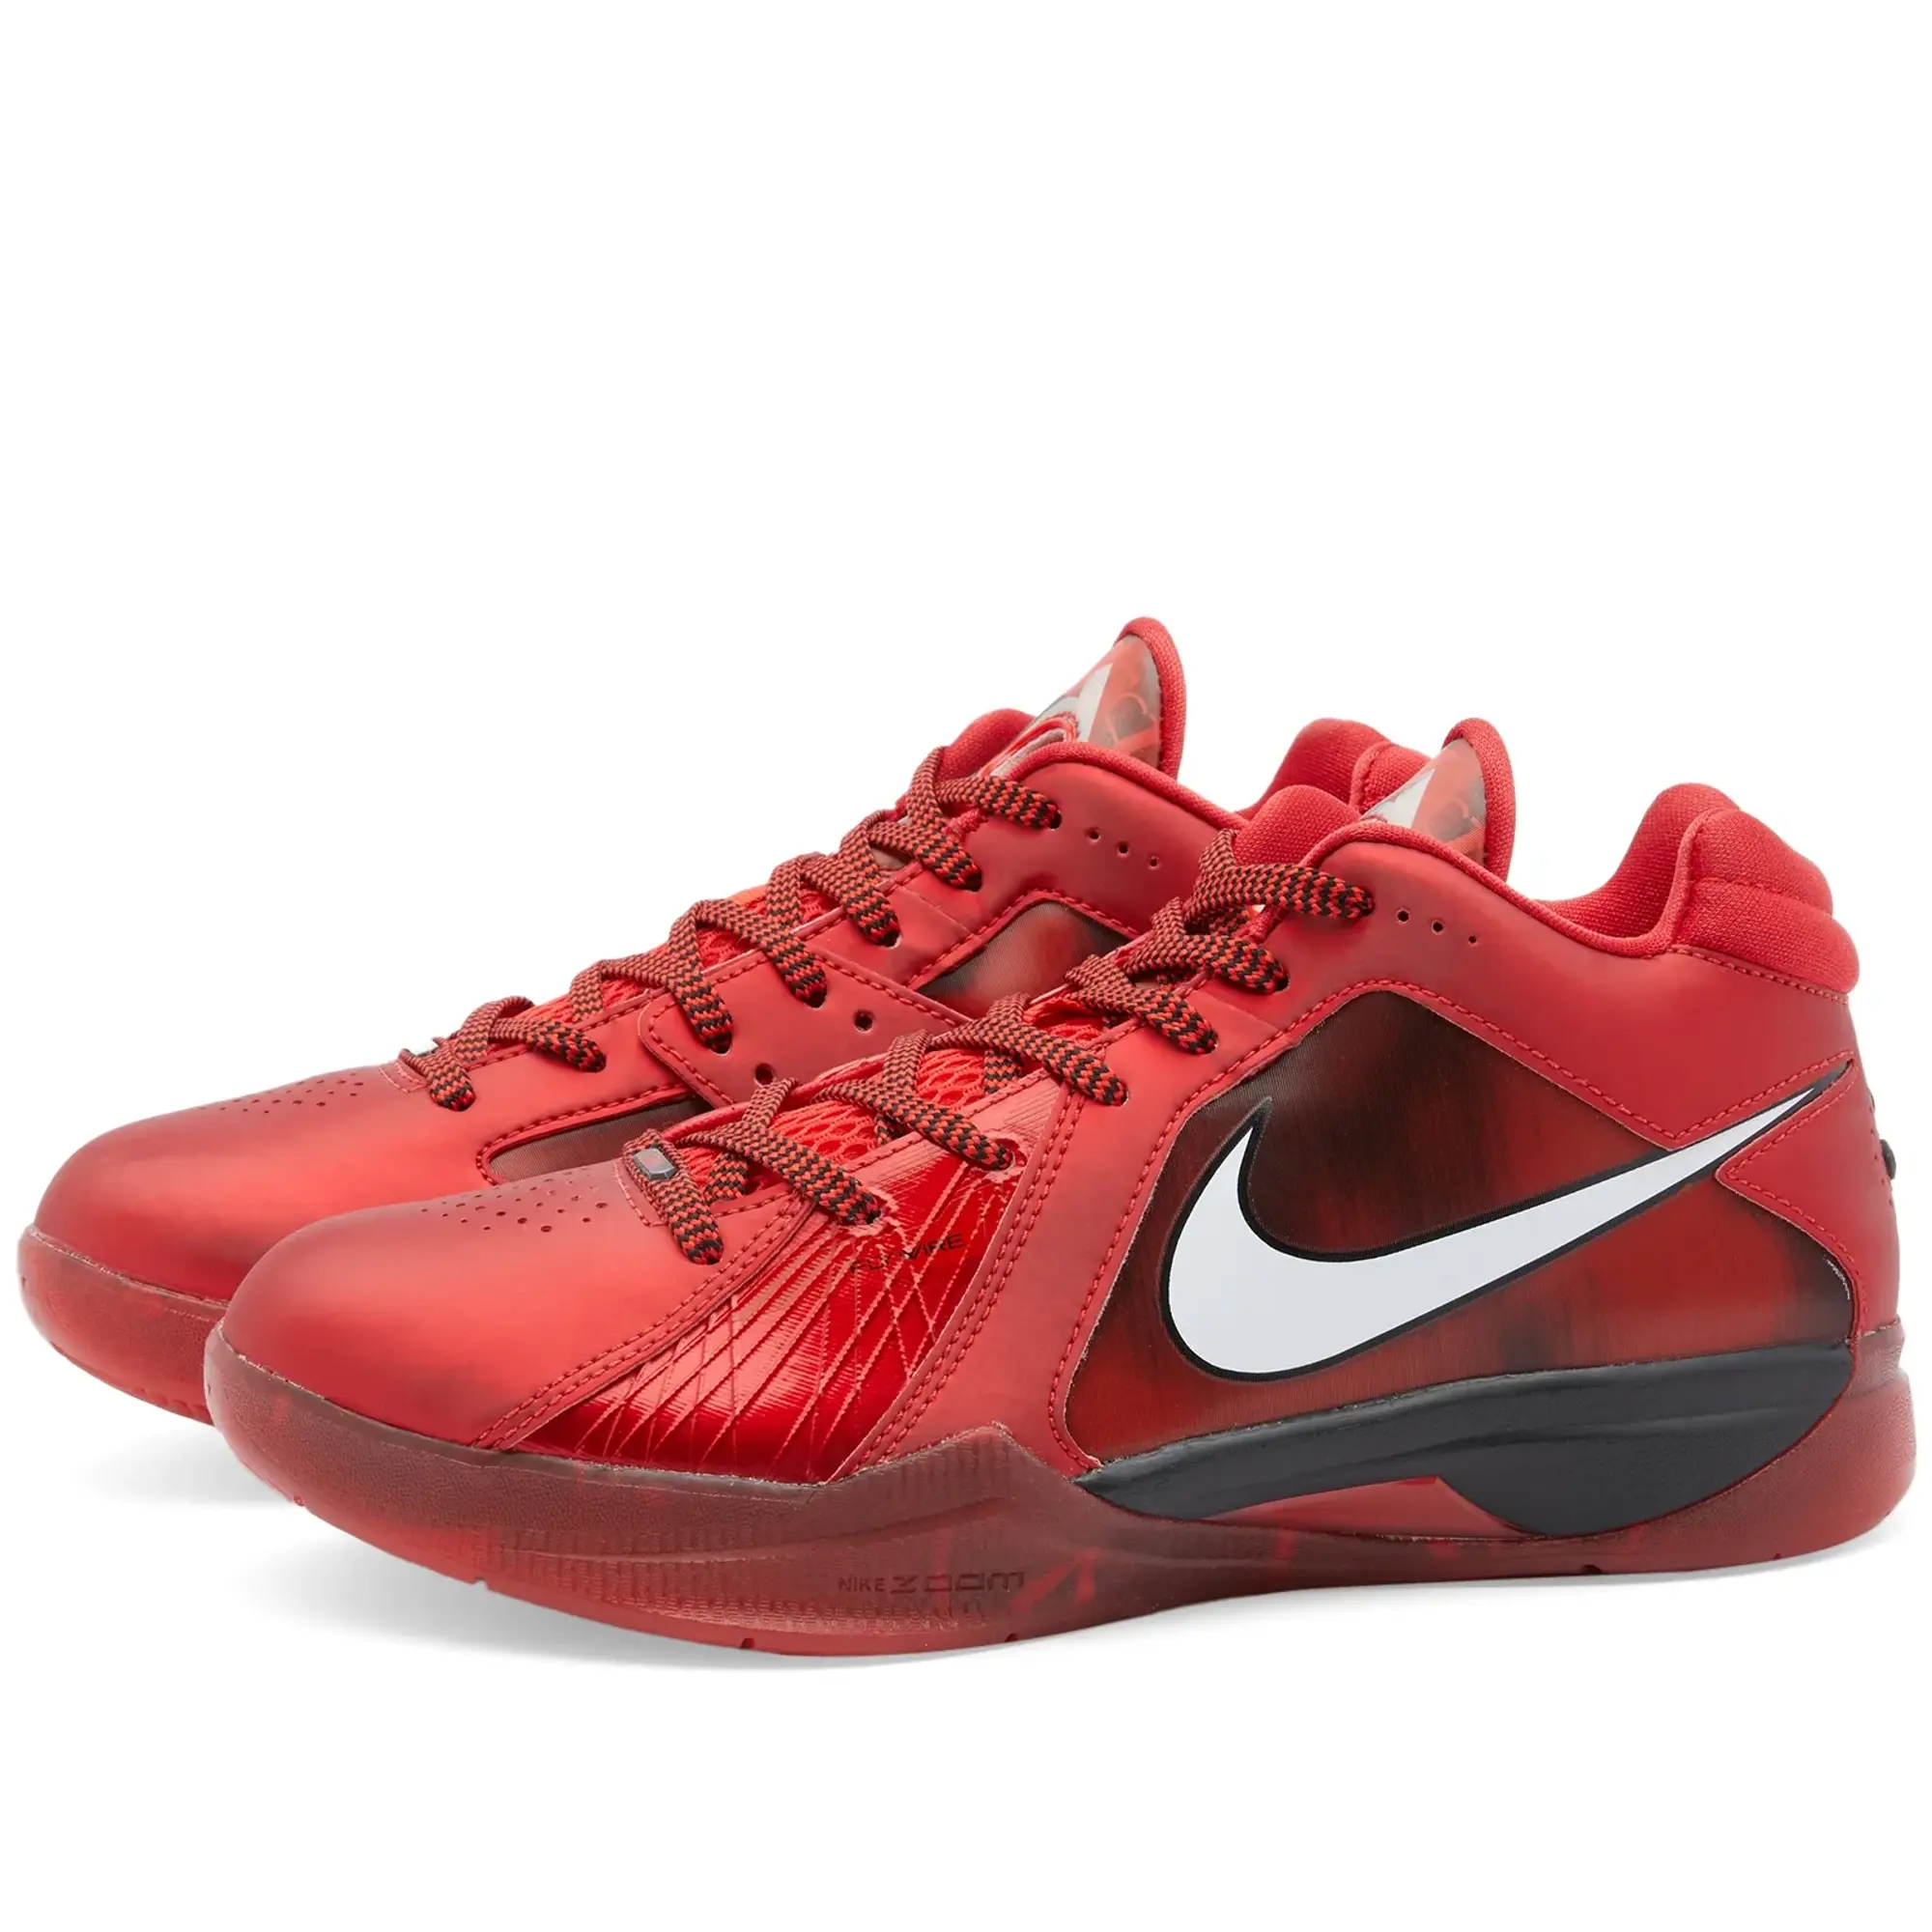 Nike KD III All-Star - Red